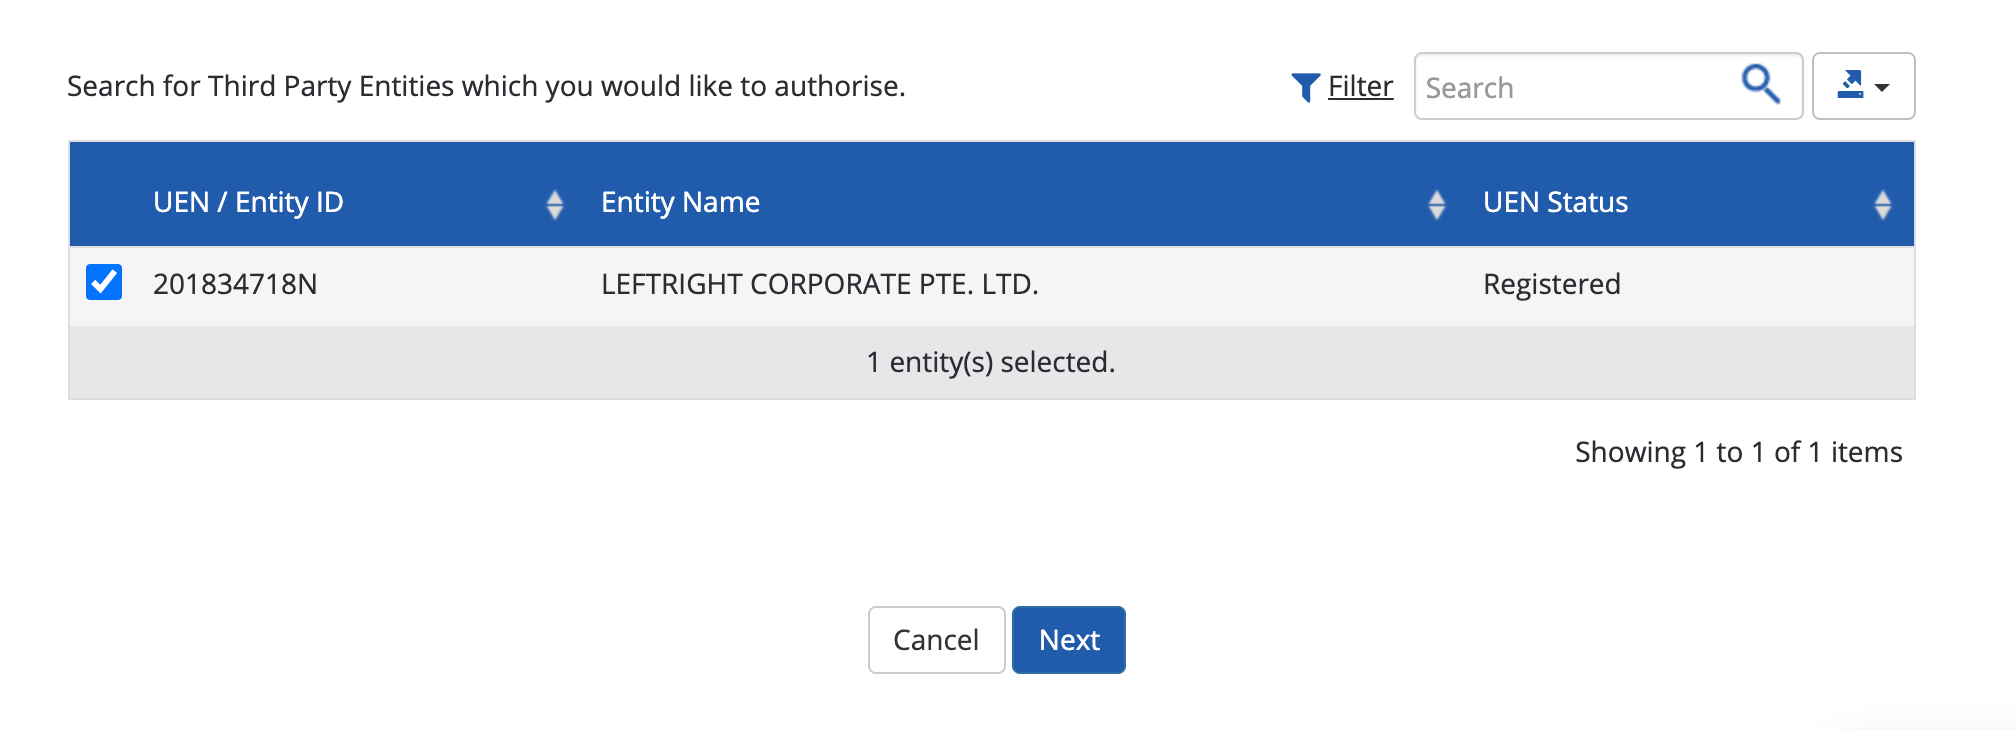 Add Leftright Corporate